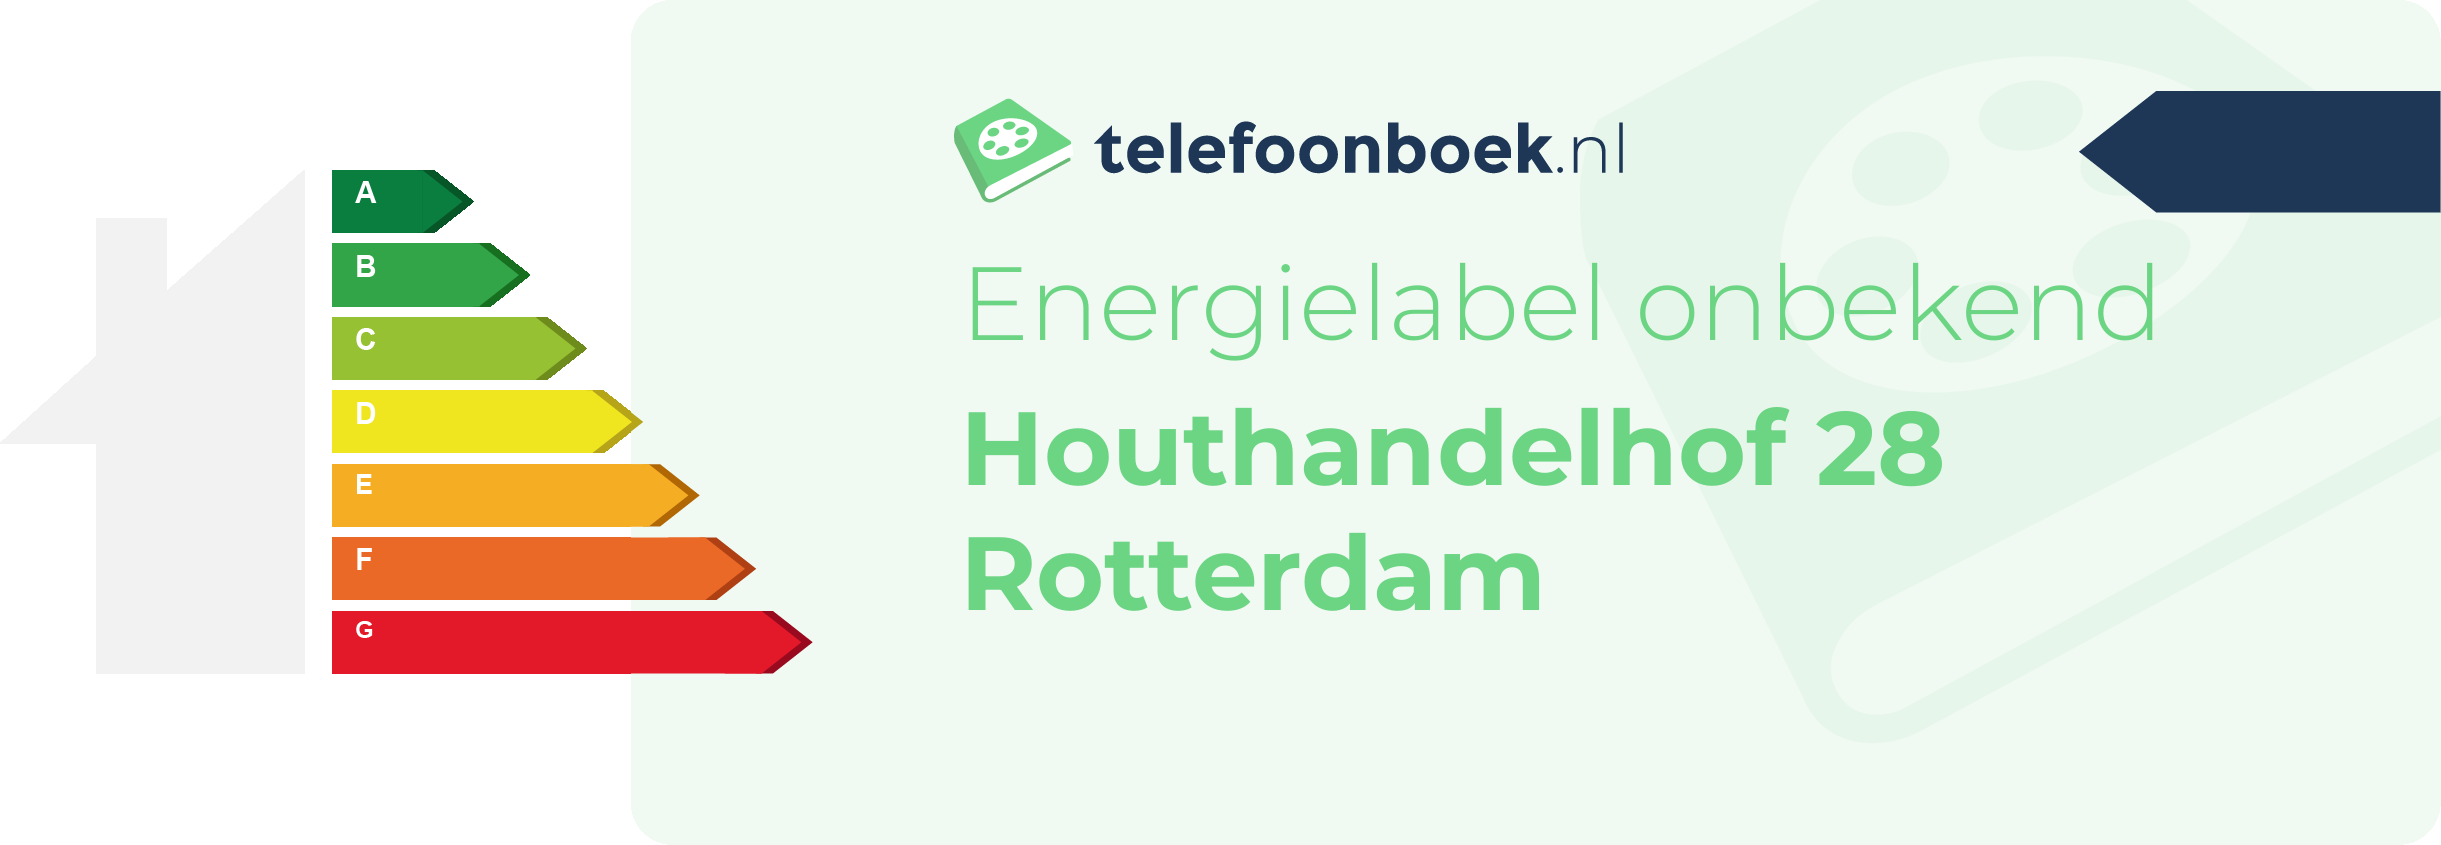 Energielabel Houthandelhof 28 Rotterdam